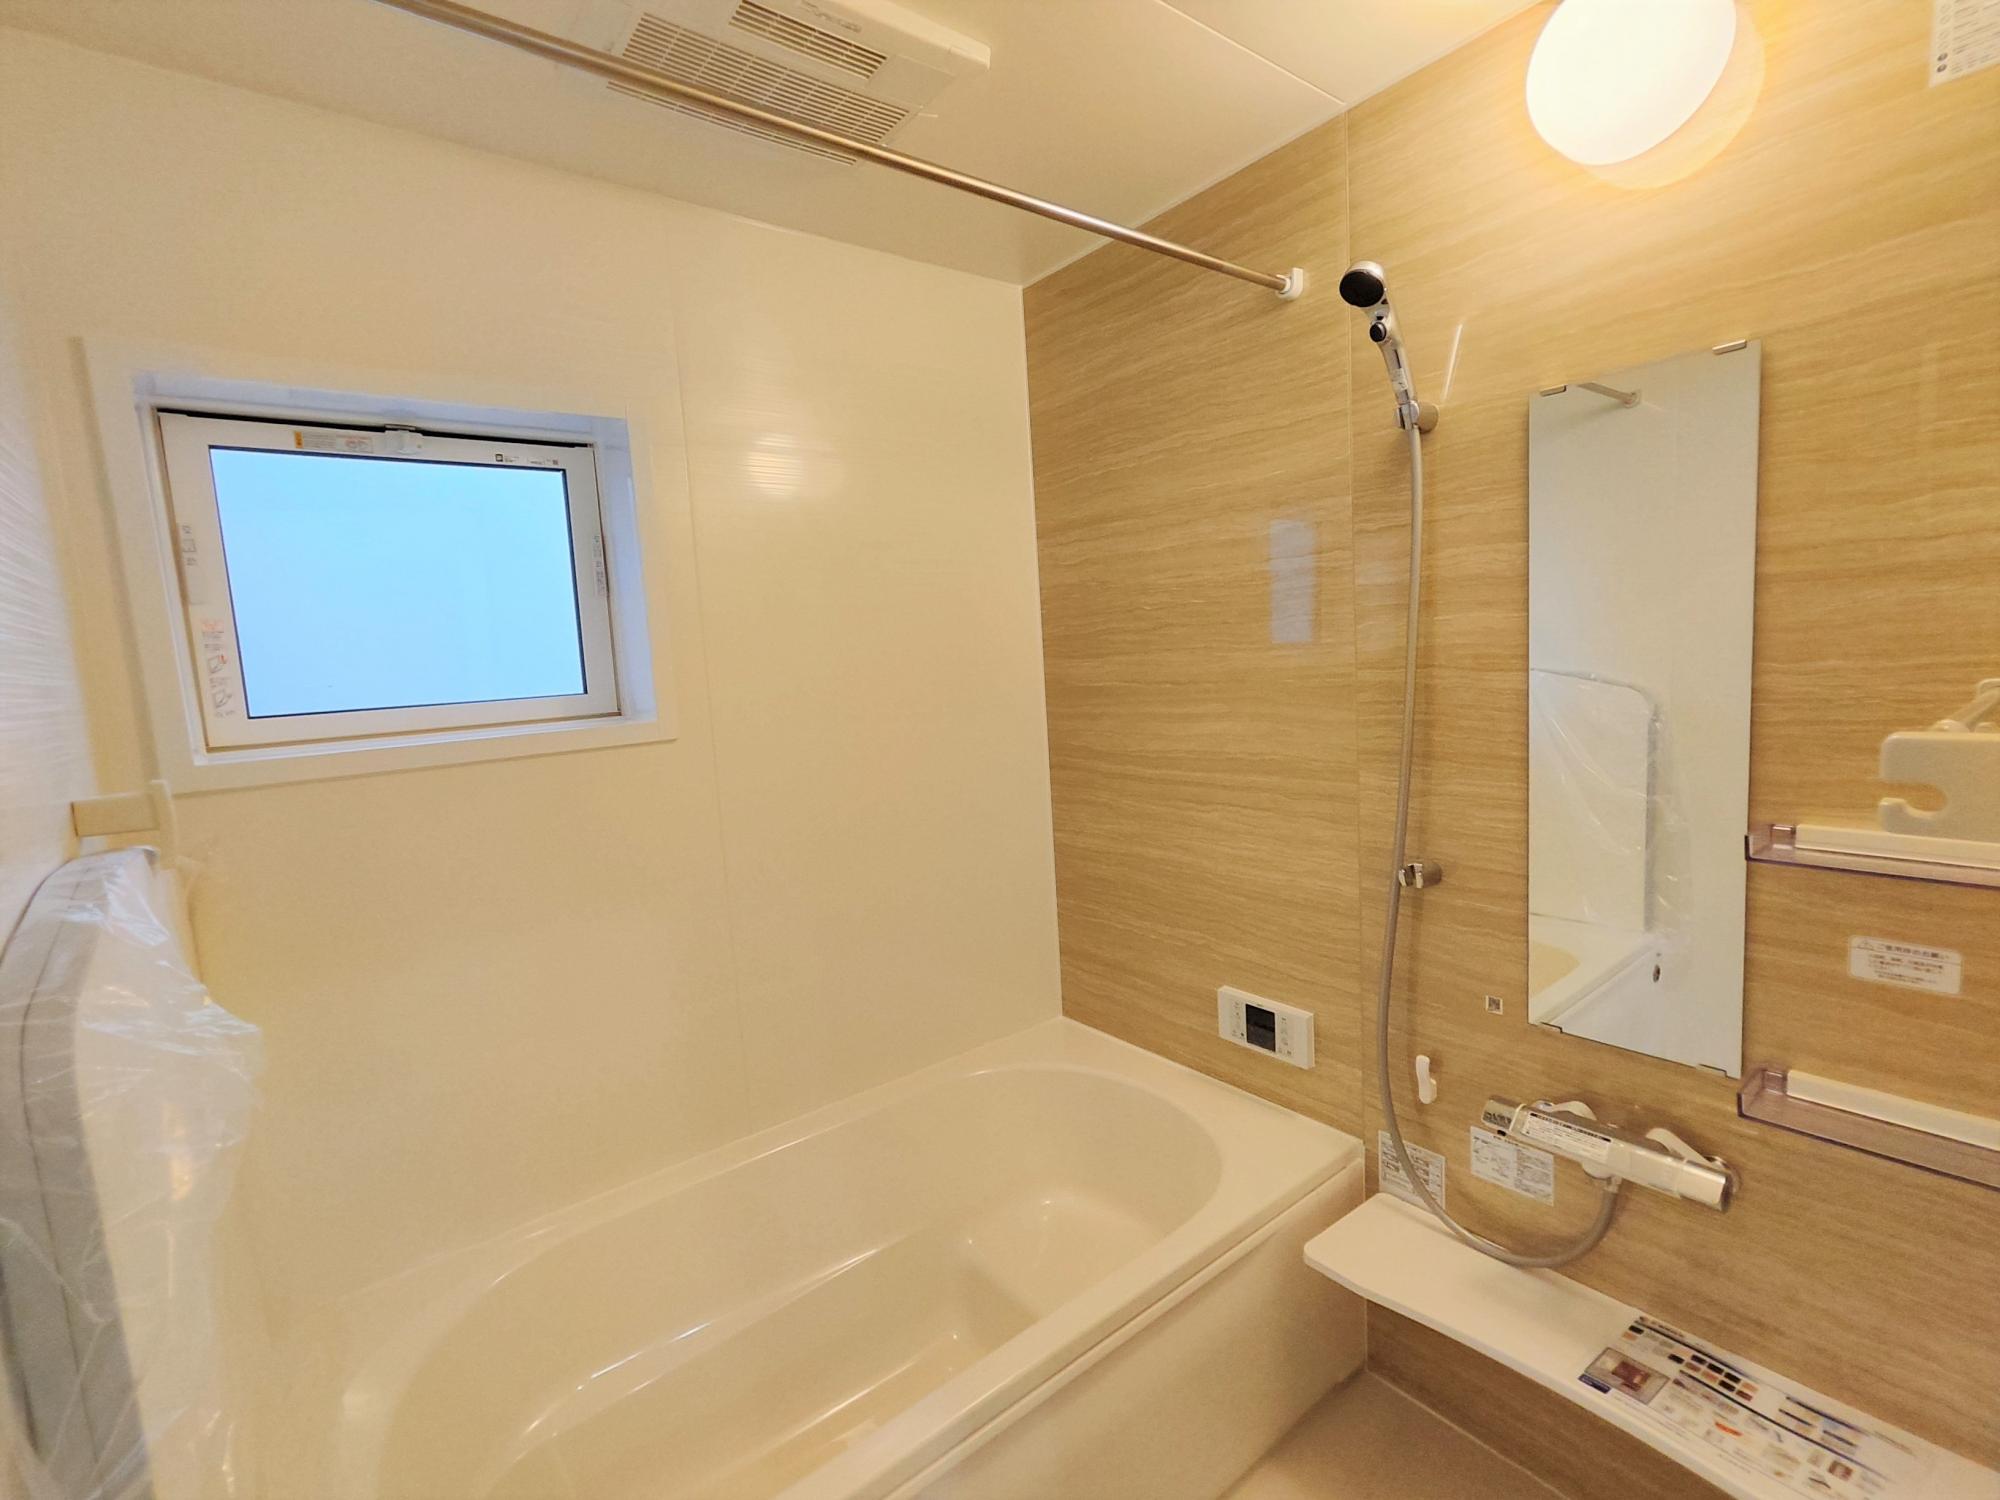 【5号棟】　アクセントクロス採用した浴室はオシャレで、一日の疲れが癒される空間に♪高断熱浴槽を採用し、4時間たっても湯温低下は2.5℃以下なので光熱費の節約にもなります。